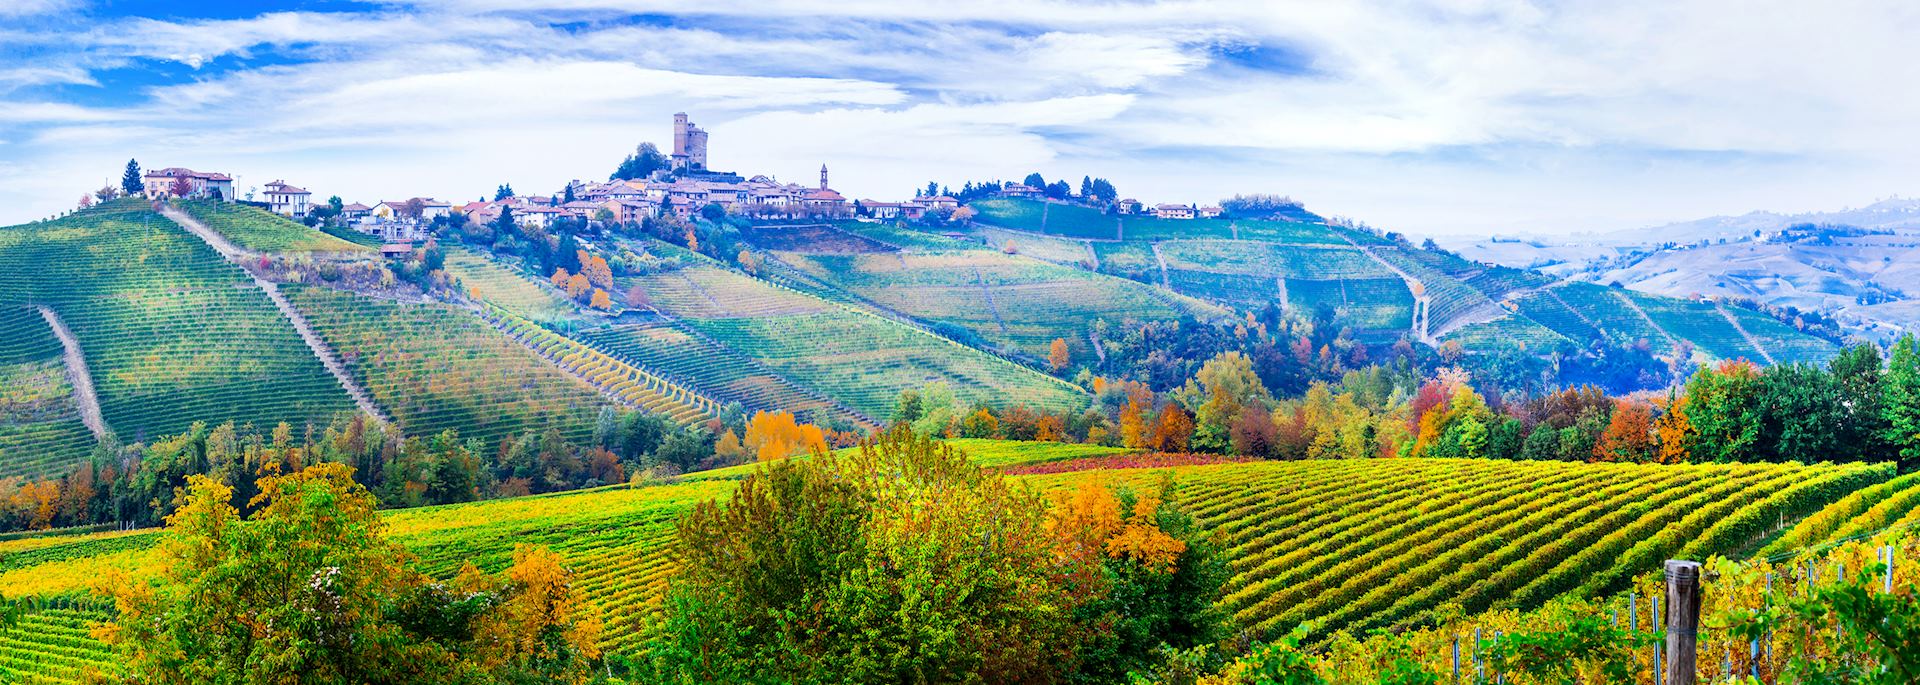 Piedmont vineyards